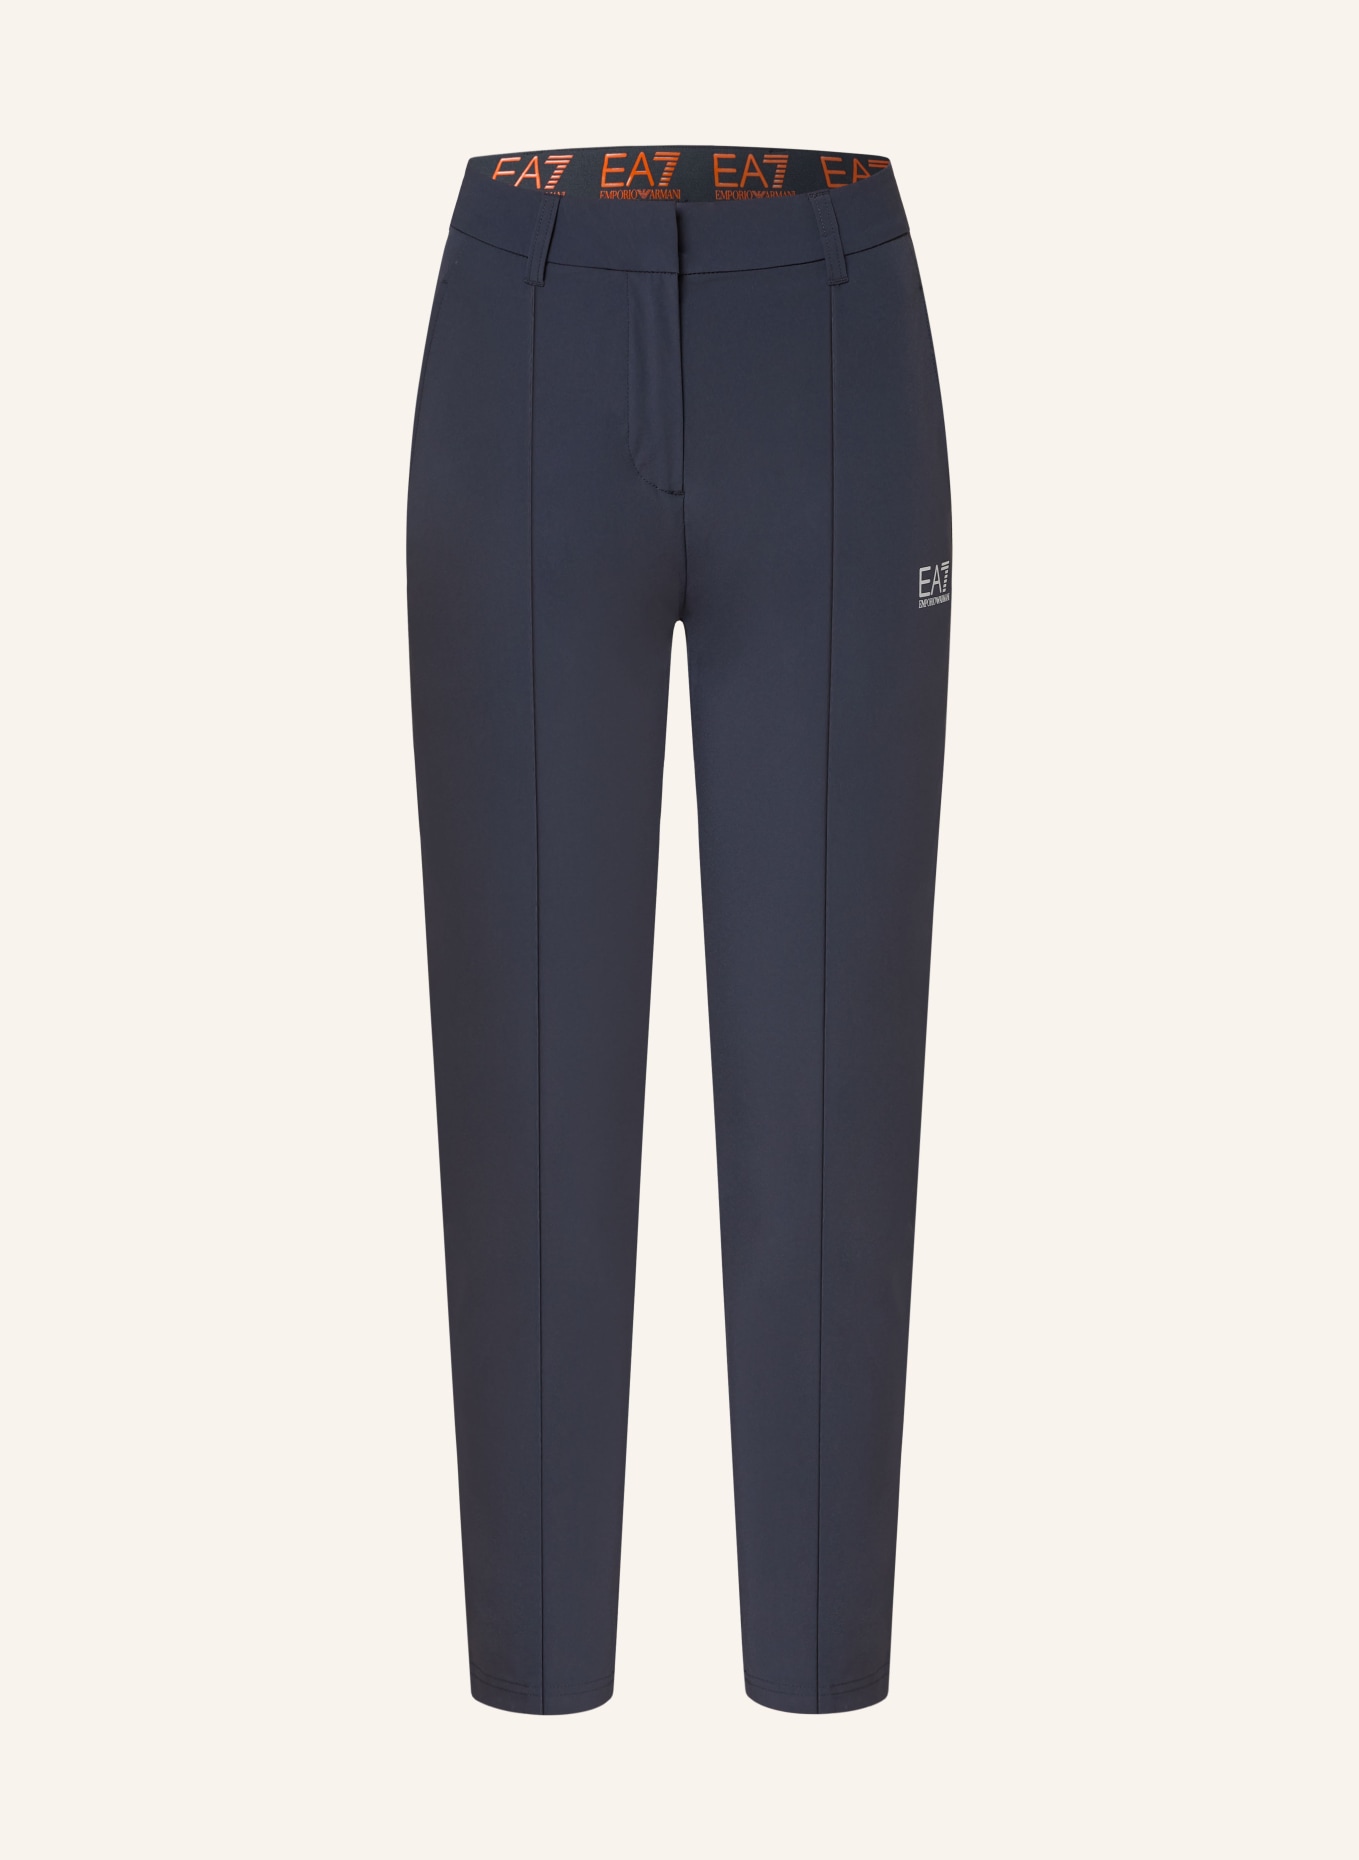 EA7 EMPORIO ARMANI 7/8 golf trousers, Color: DARK BLUE (Image 1)